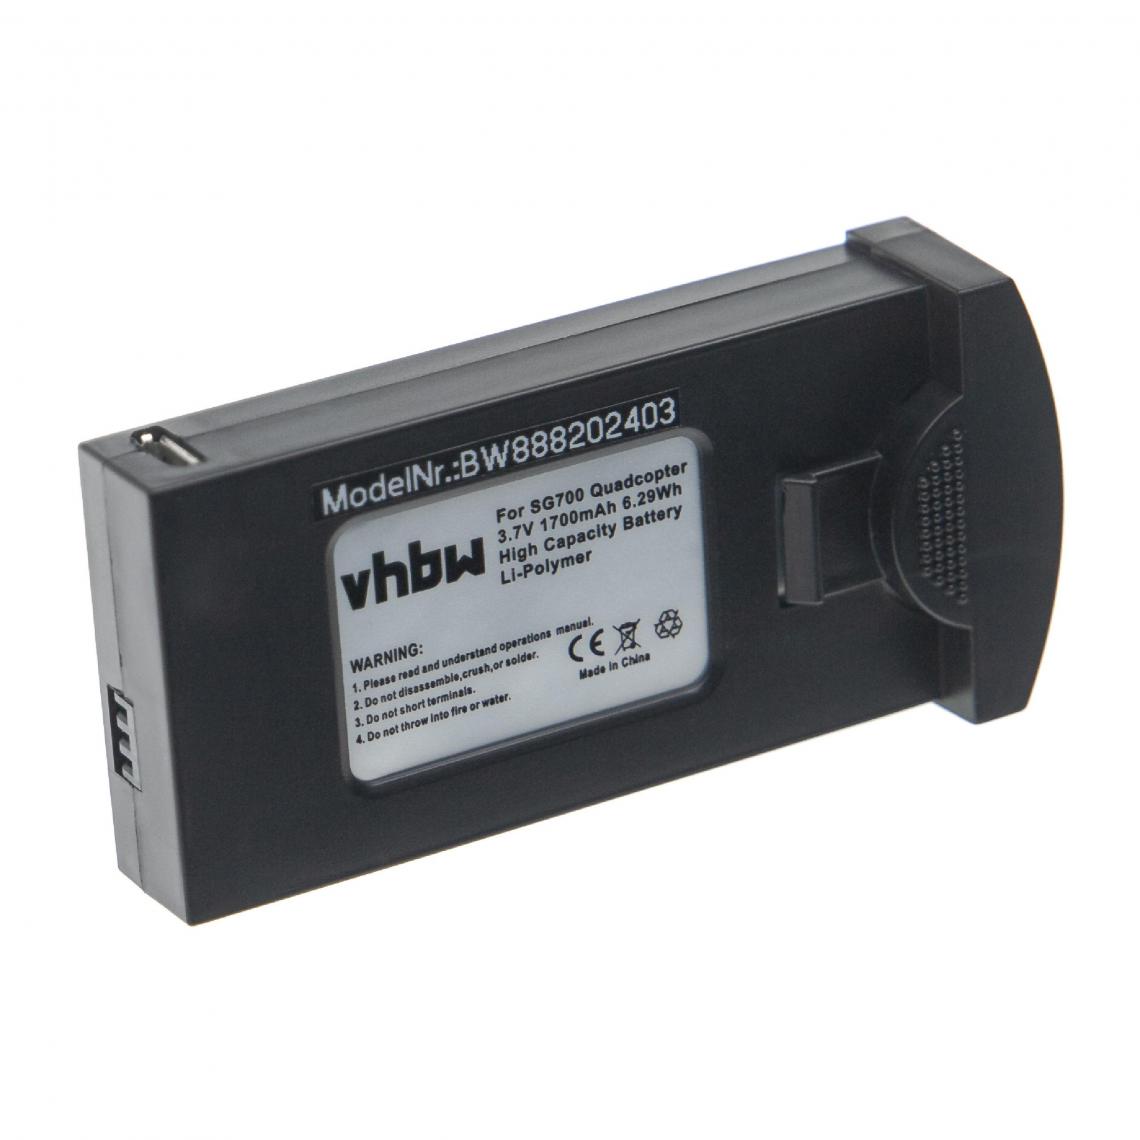 Vhbw - vhbw Batterie compatible avec Quadcopter / Drone DM107S, S169, SG700 drone (1700mAh, 3,7V, Li-polymère) - Batteries et chargeurs